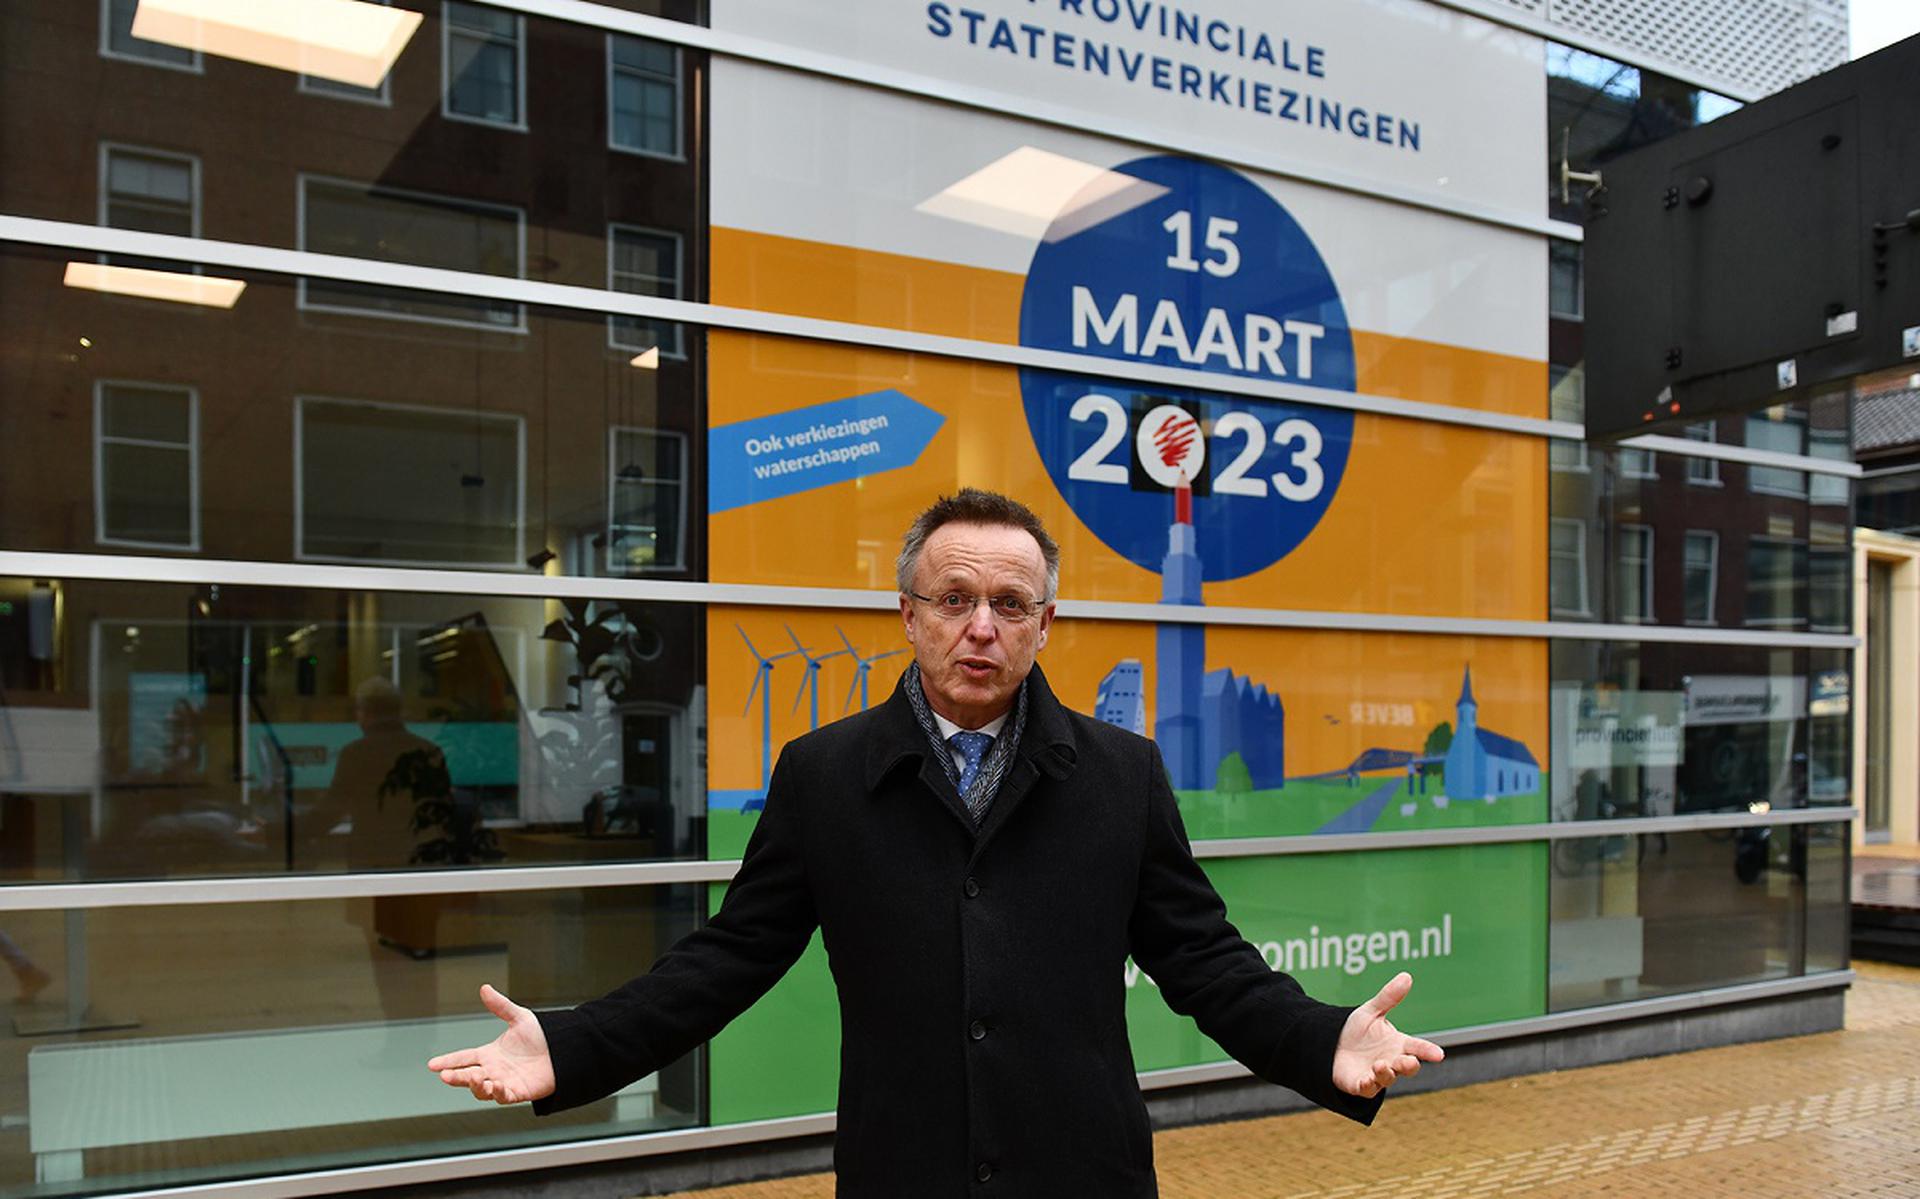 René Paas voor de grote sticker. Foto: Provincie Groningen